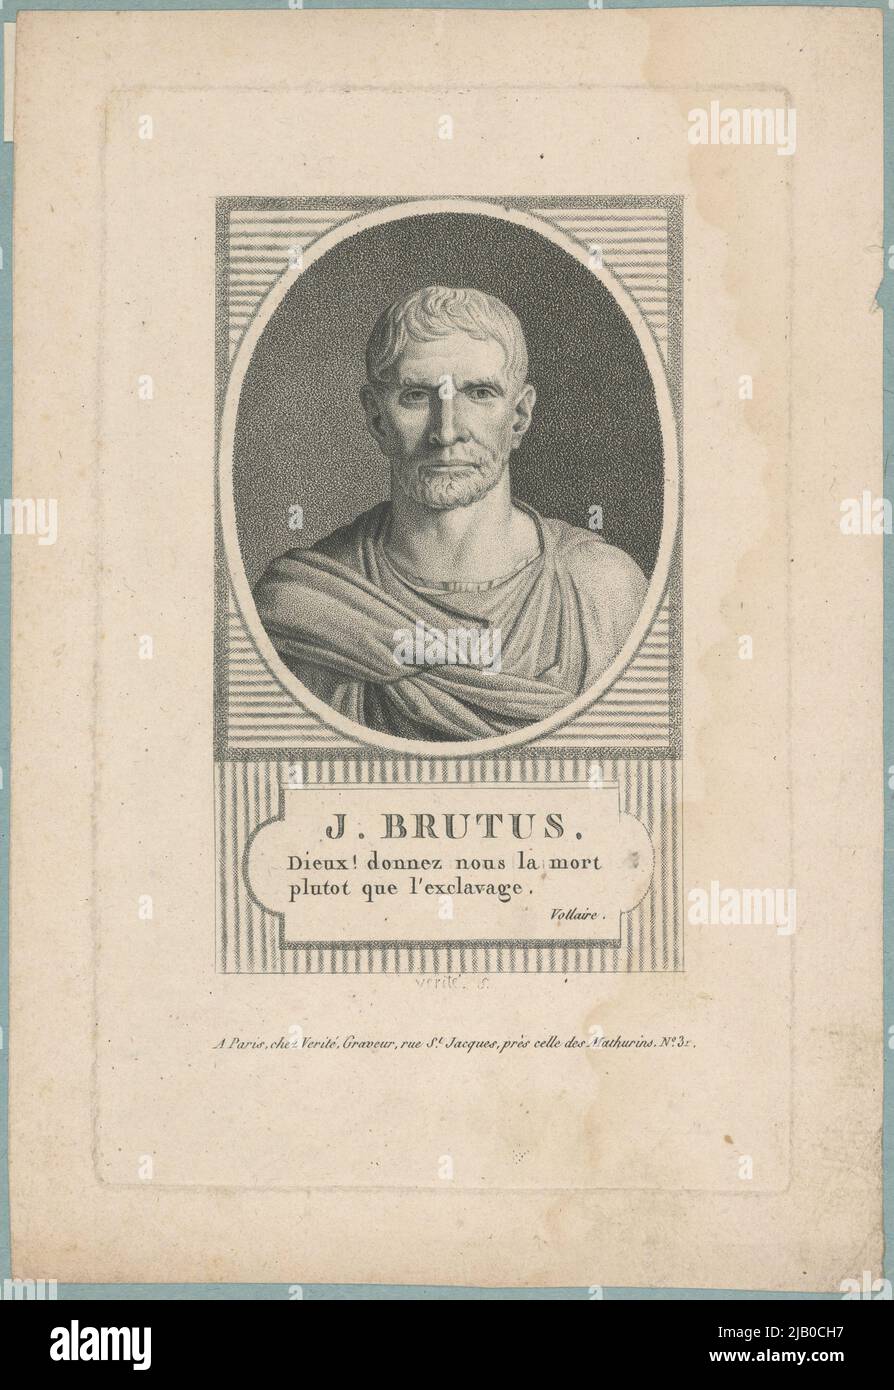 Juniusz Brutus (Lucius Junius Brutus, d. 509 BC Silva Arsia) politicien romain, le premier consul de Rome J. Brutus Truth Banque D'Images